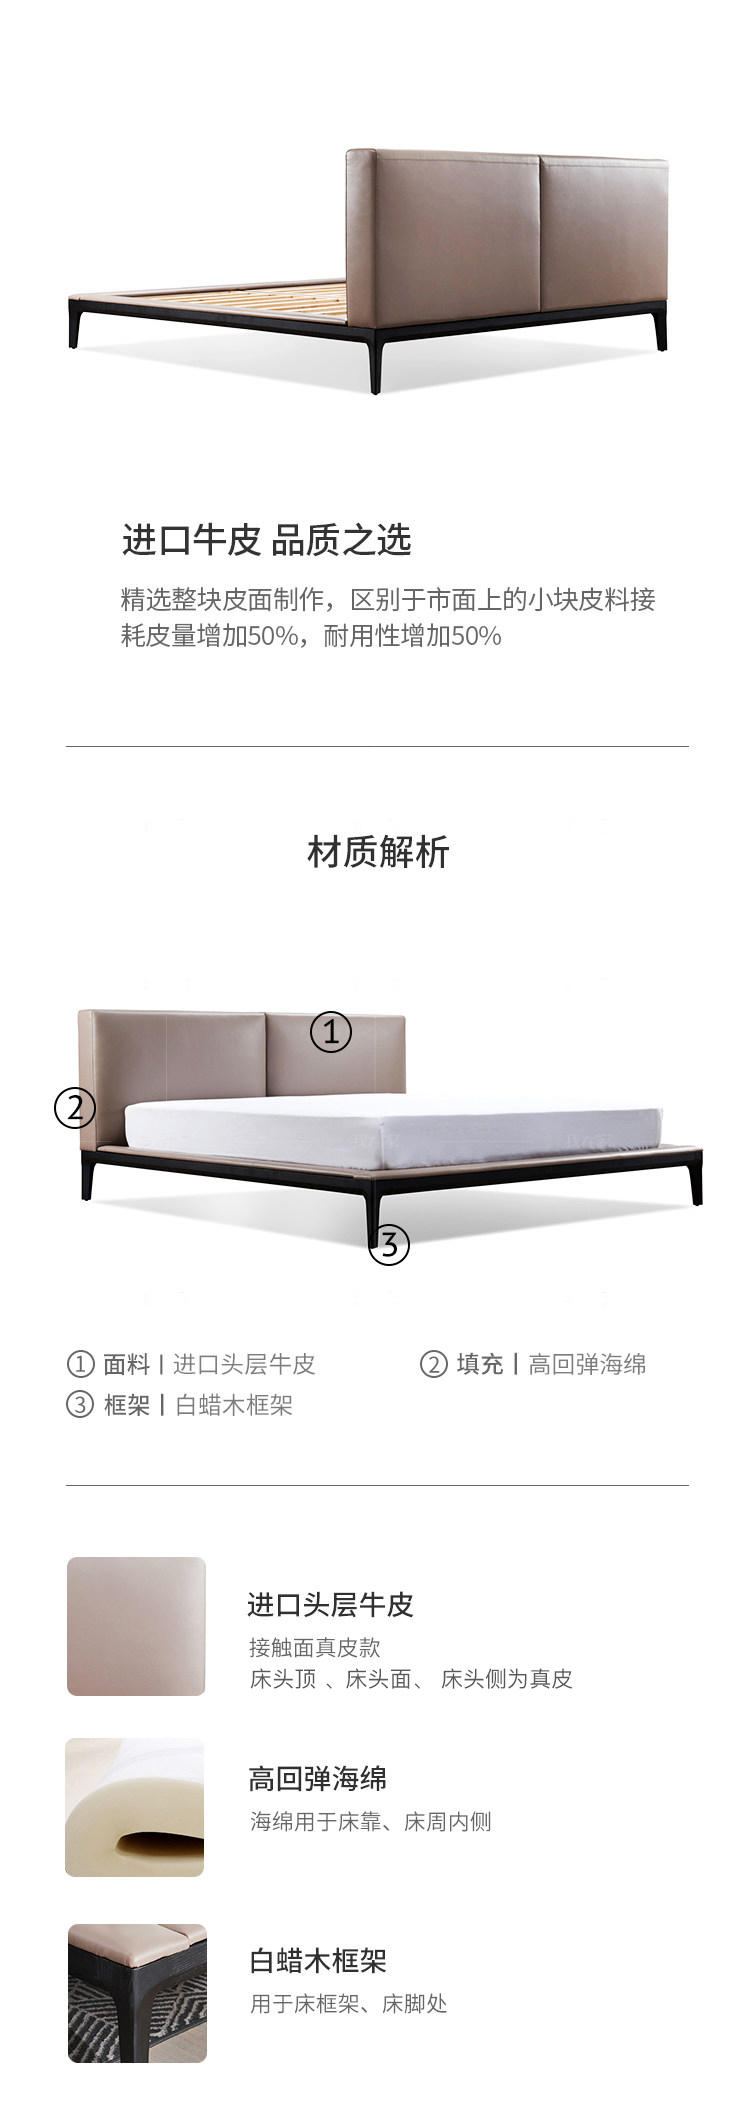 意式极简风格卢卡双人床的家具详细介绍